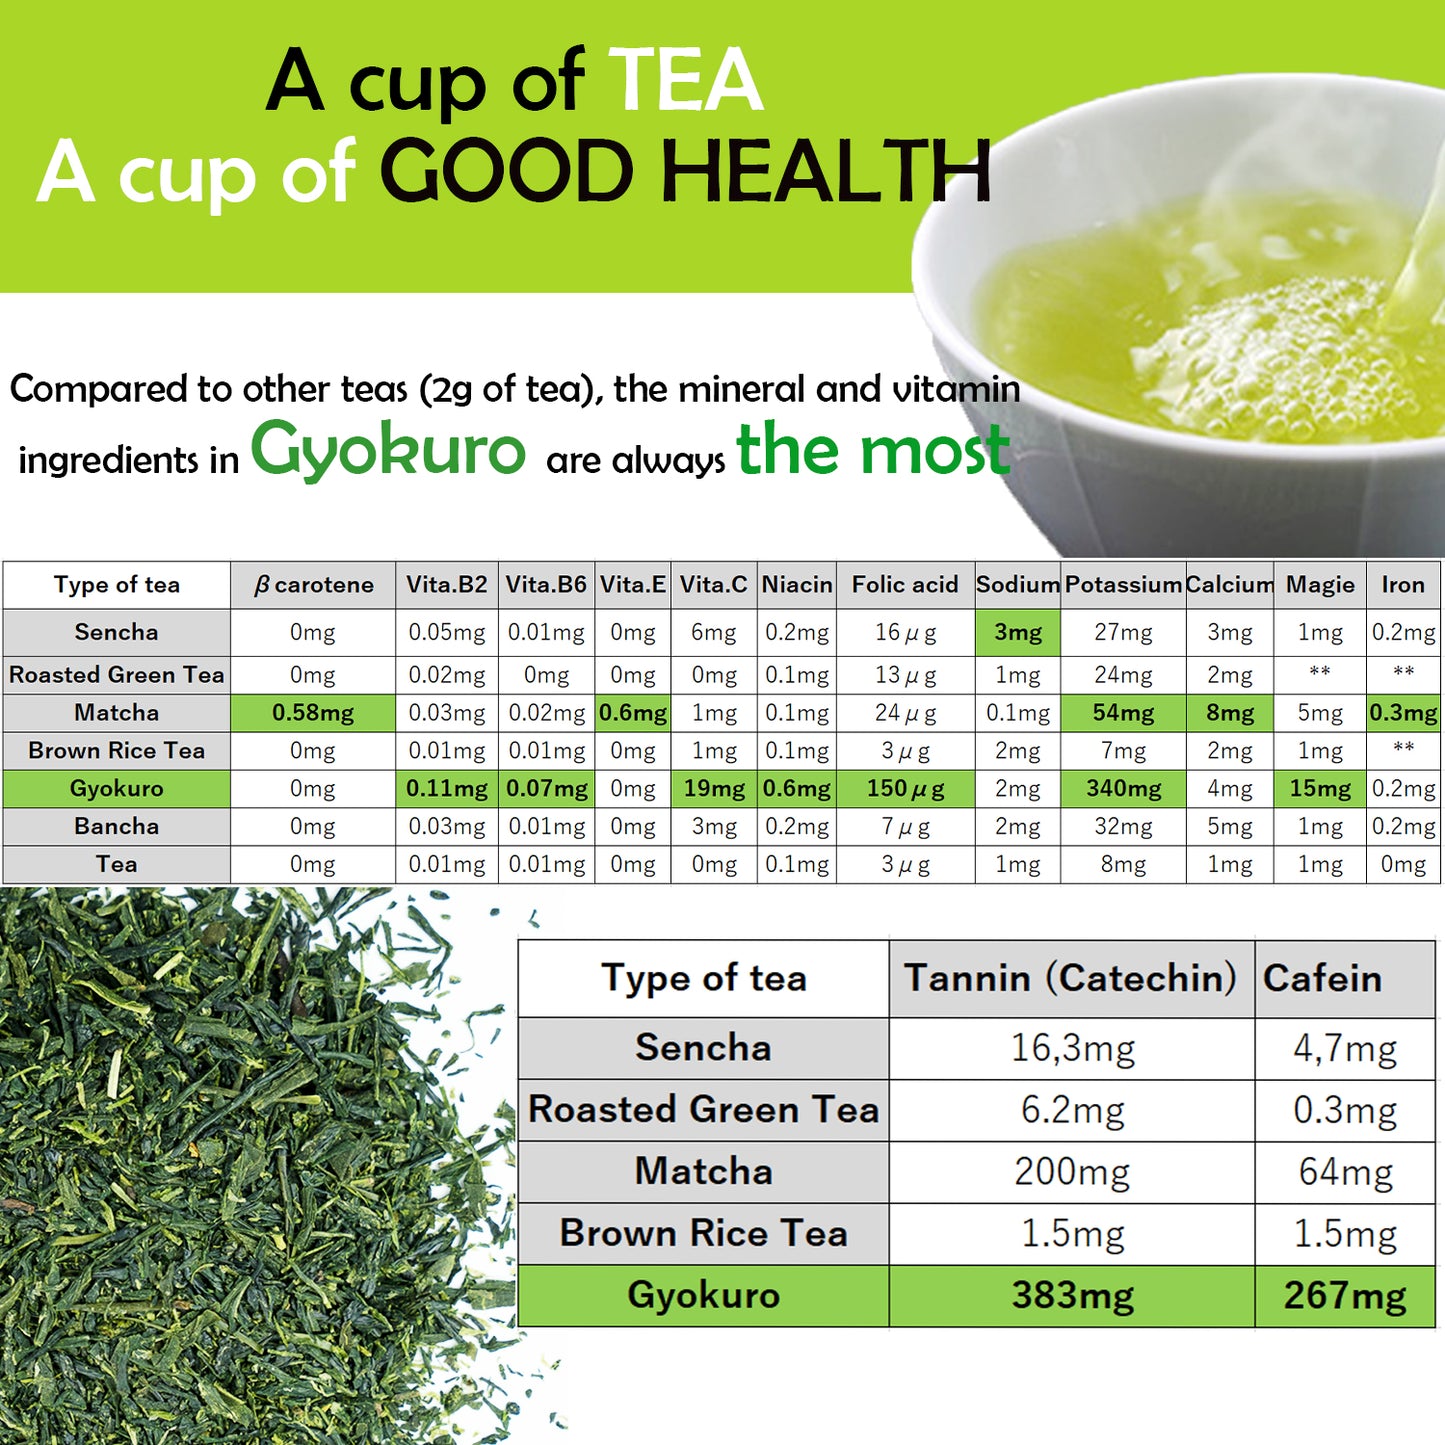 Trà Nhật Bản Hữu Cơ Cao Cấp 玉 露 Ngọc Sương Organic Gyokuro 50gram (Japanese Organic Premium Gyokuro Green Tea Loose Leaf ) - Made In Japan Thương Hiệu Otsuka Green Tea Co.,Ltd.